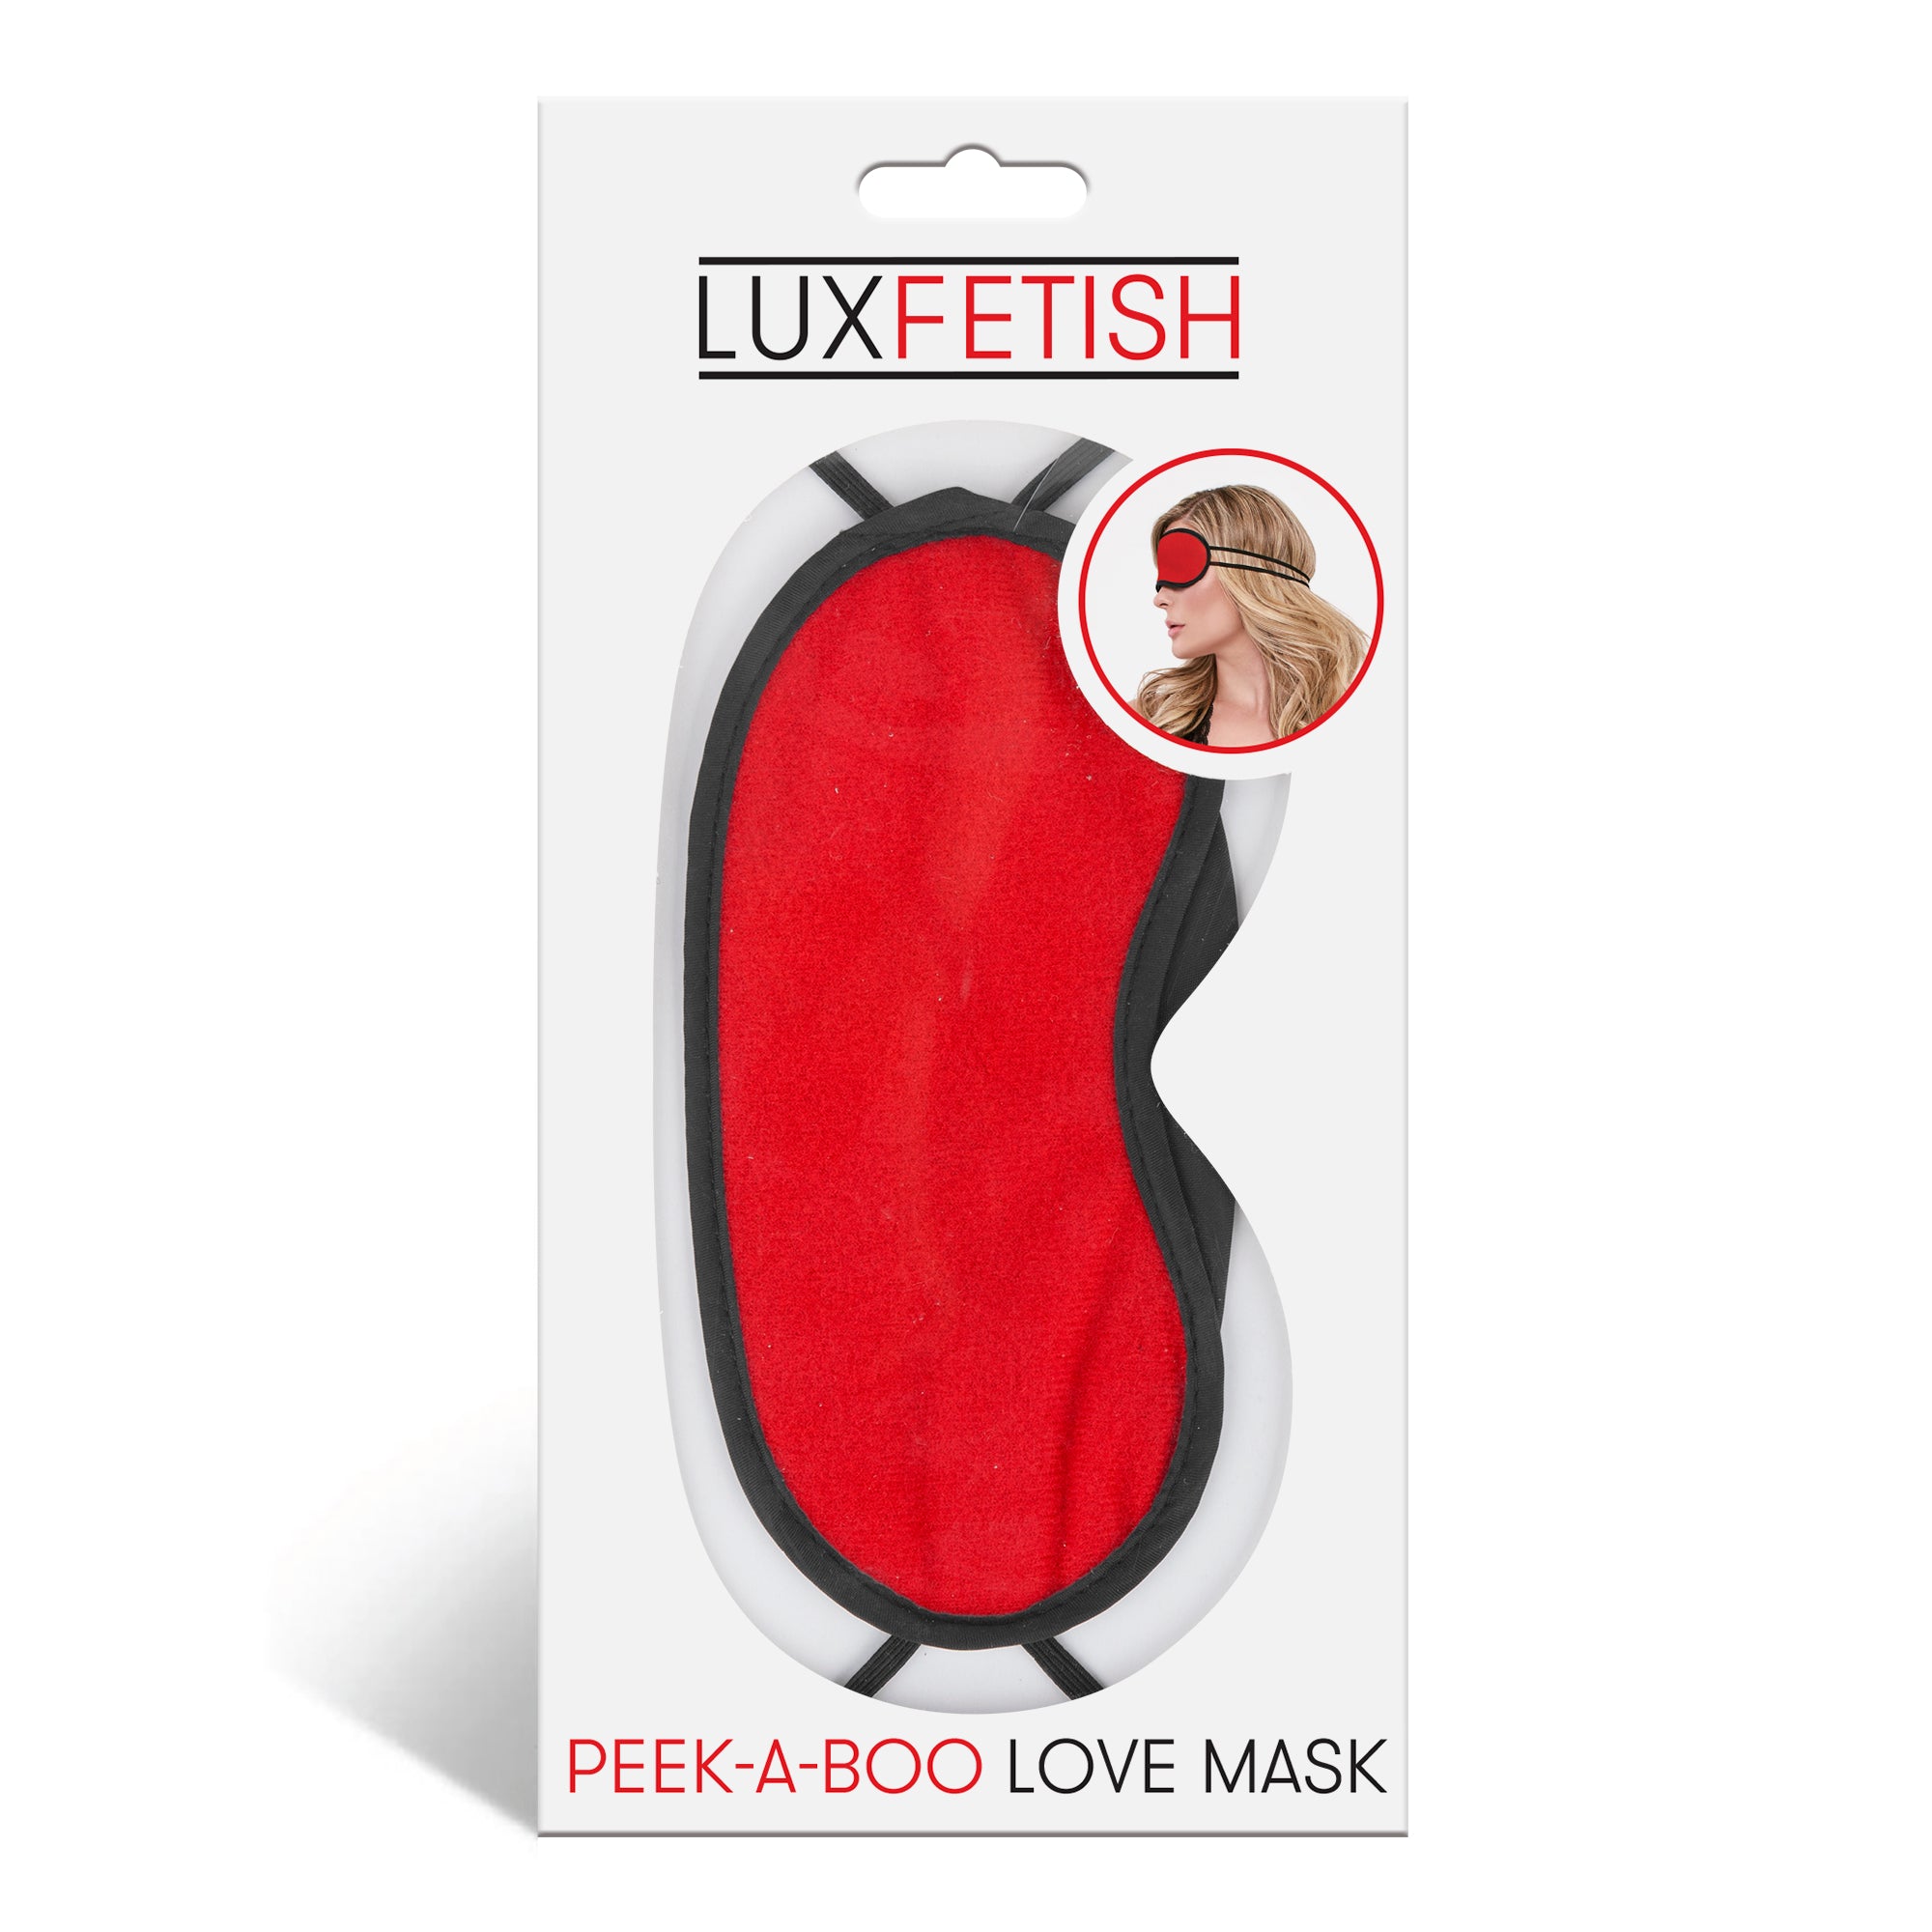 Peek-A-Boo Love Mask Red